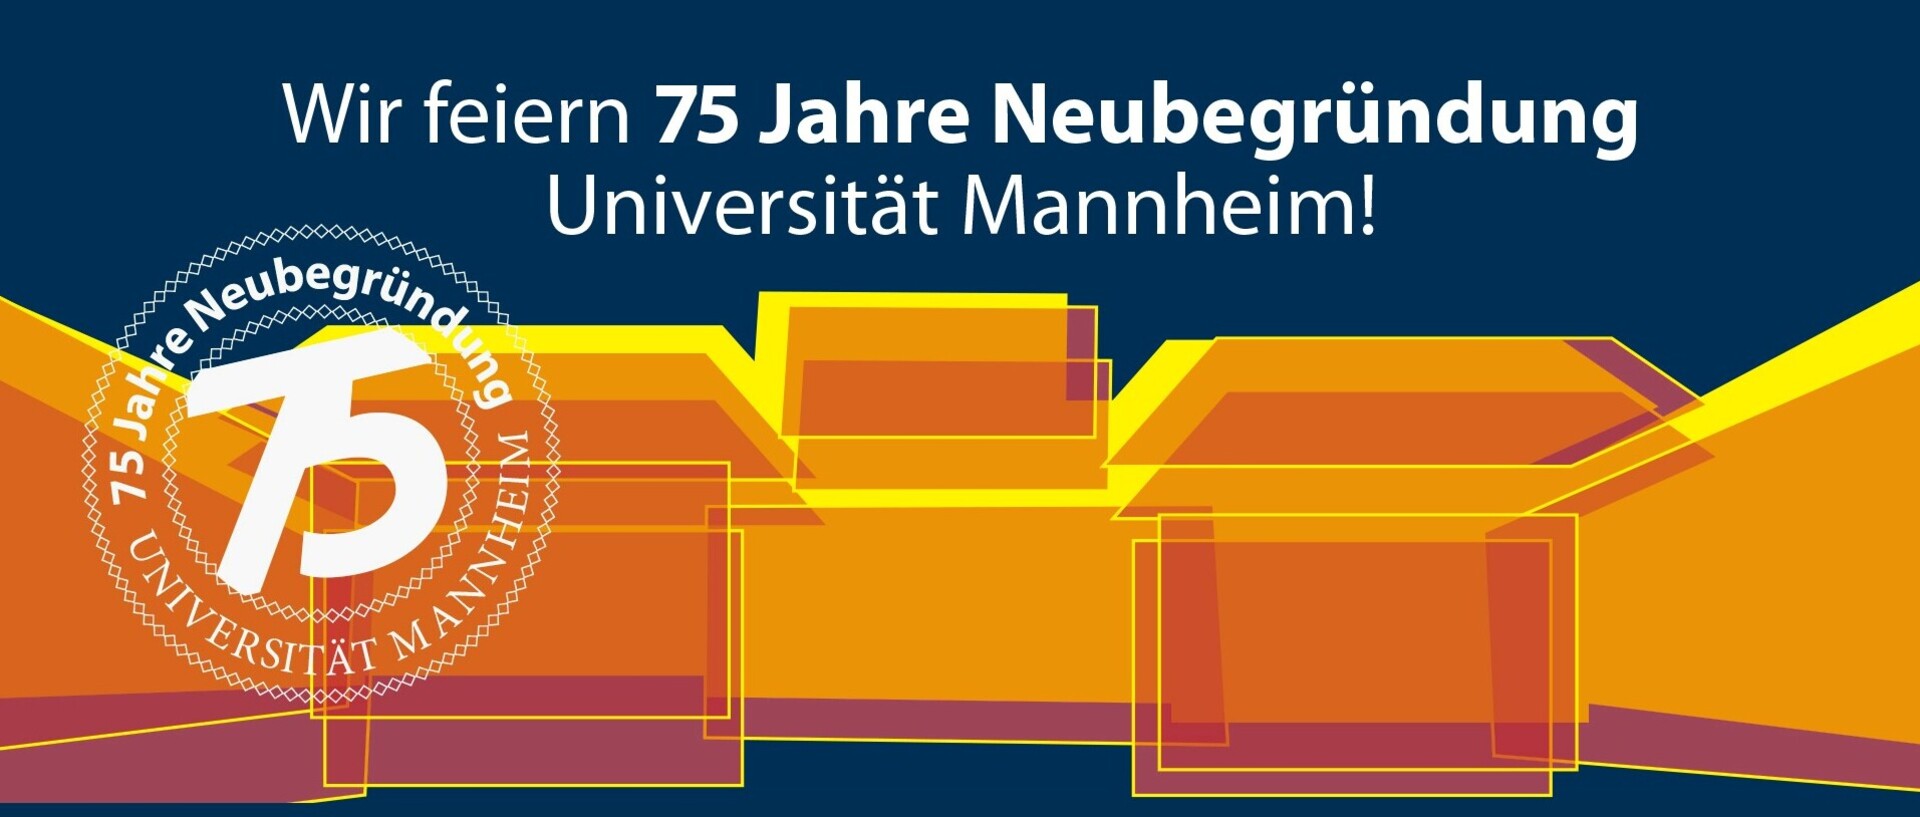 Ein Header zeigt die Uni Mannheim auf abstrakte Weise in orange. Der Schriftzug "Wir feiern 75 Jahre Neubegründung Universität Mannheim!" steht über dem Schloss in weiß.